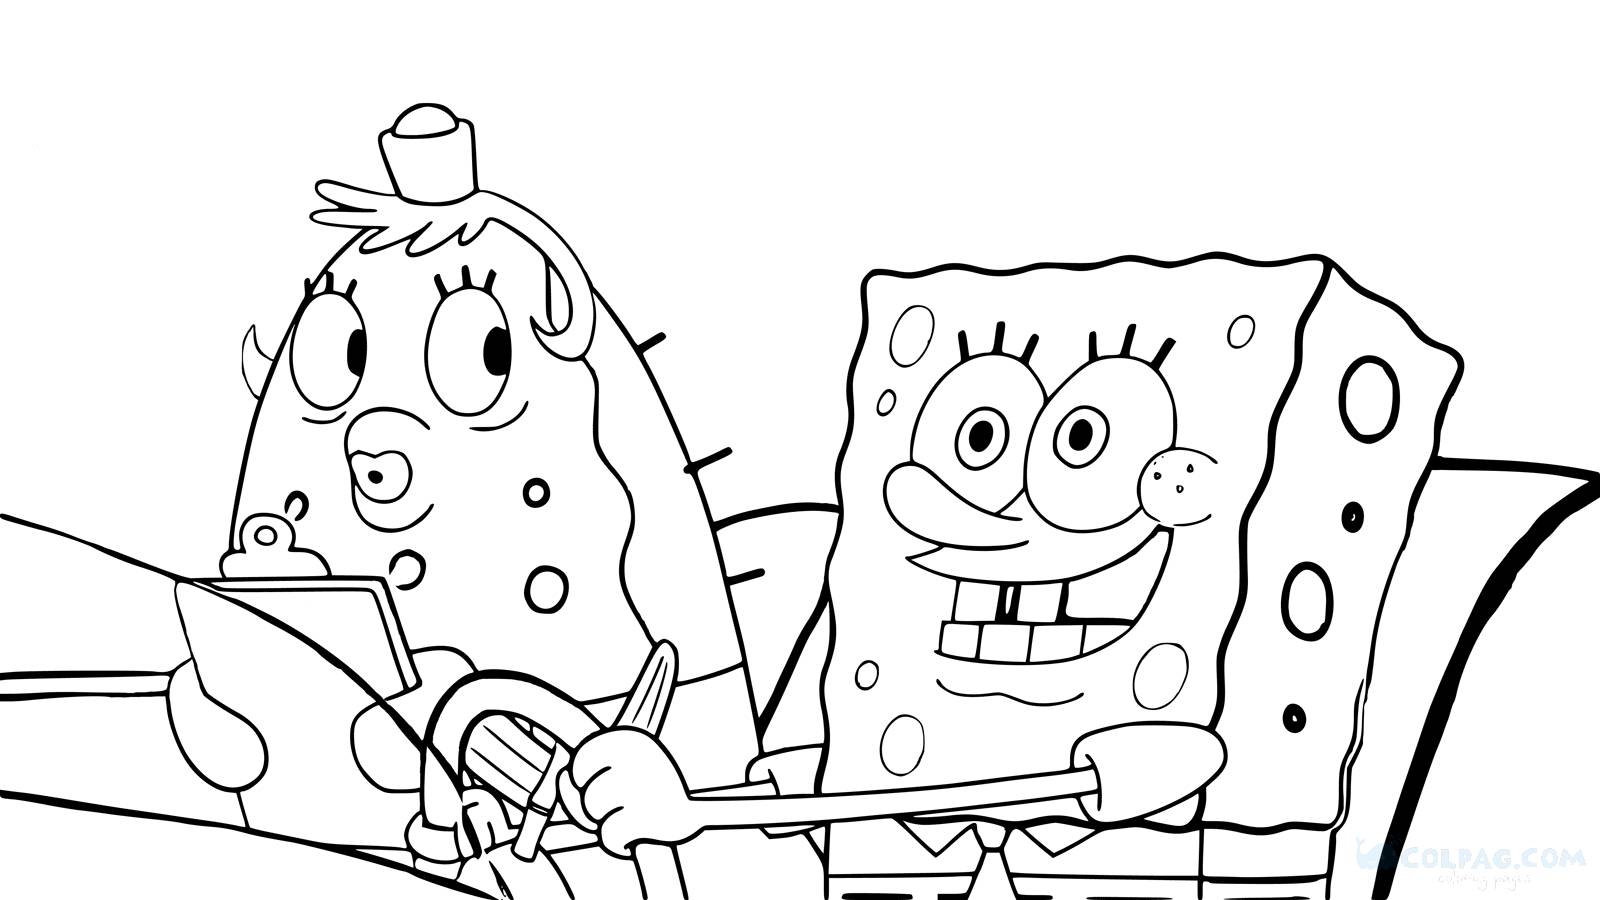 Disegni di Sponge Bob da colorare e stampare